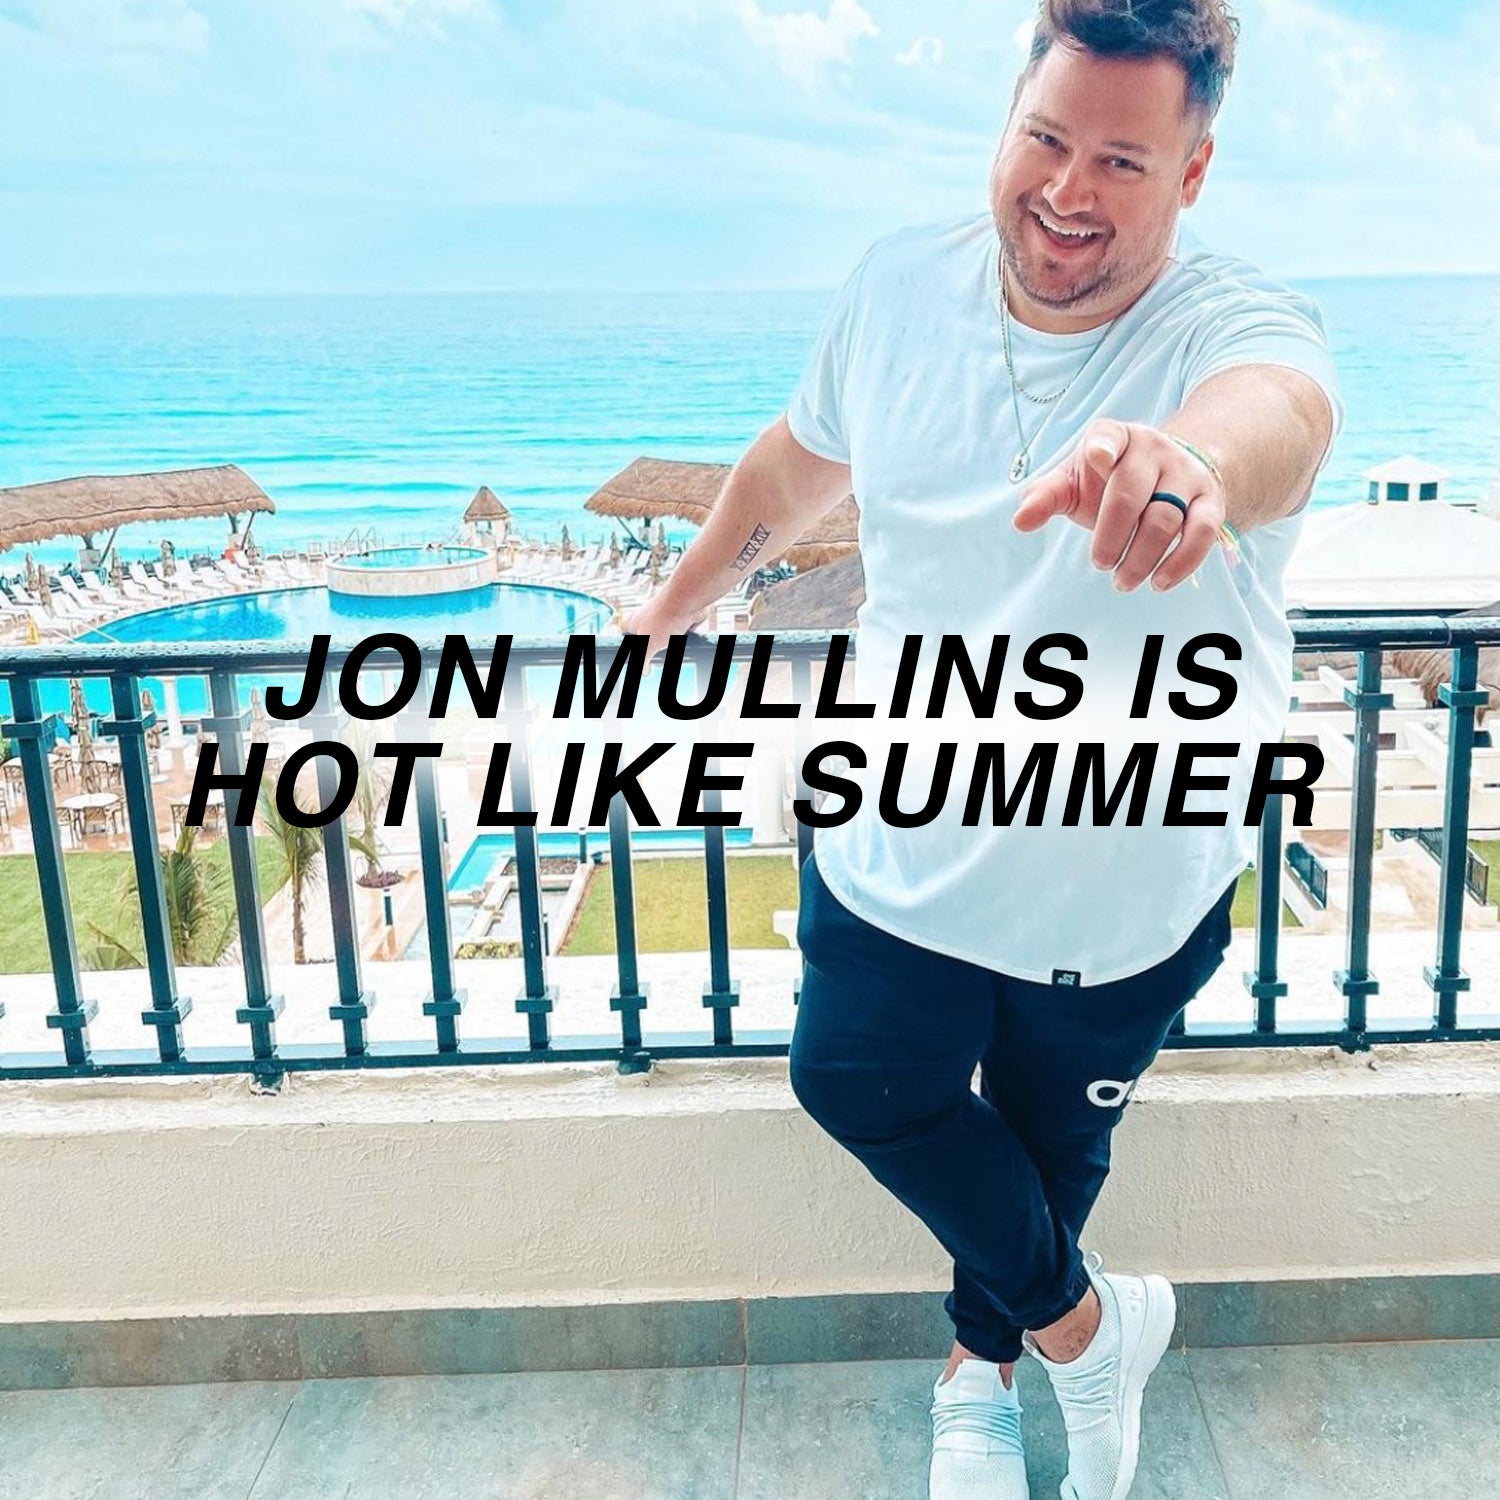 Jon Mullins is Hot Like Summer in ONE BONE!